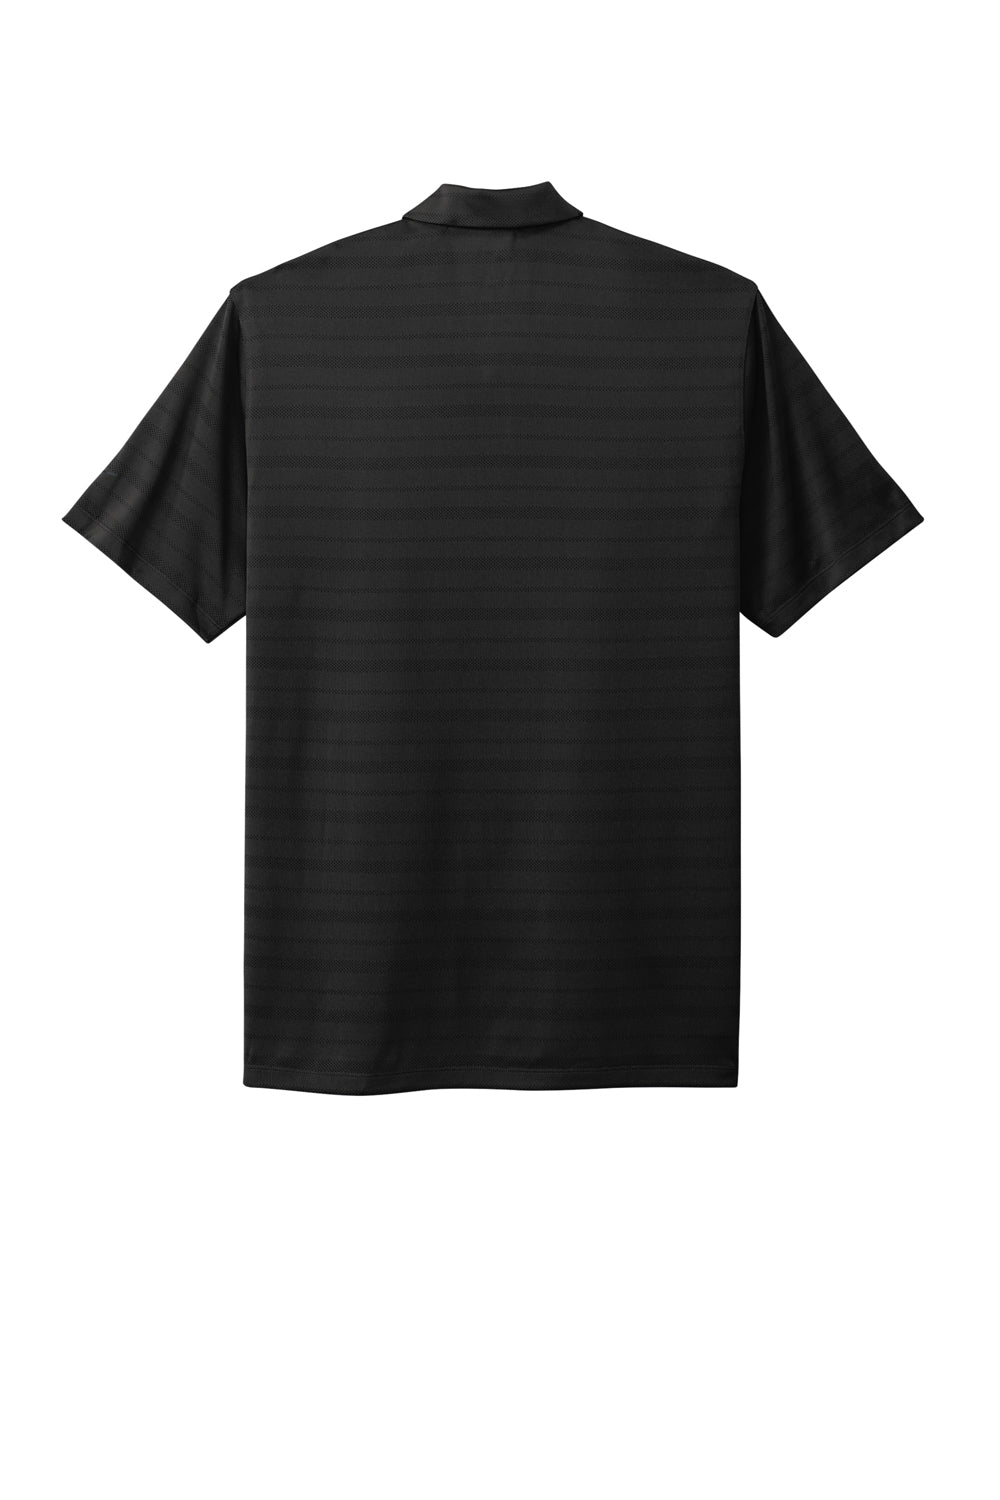 Nike NKDC2115 Mens Vapor Jacquard Dri-Fit Moisture Wicking Short Sleeve Polo Shirt Black Flat Back